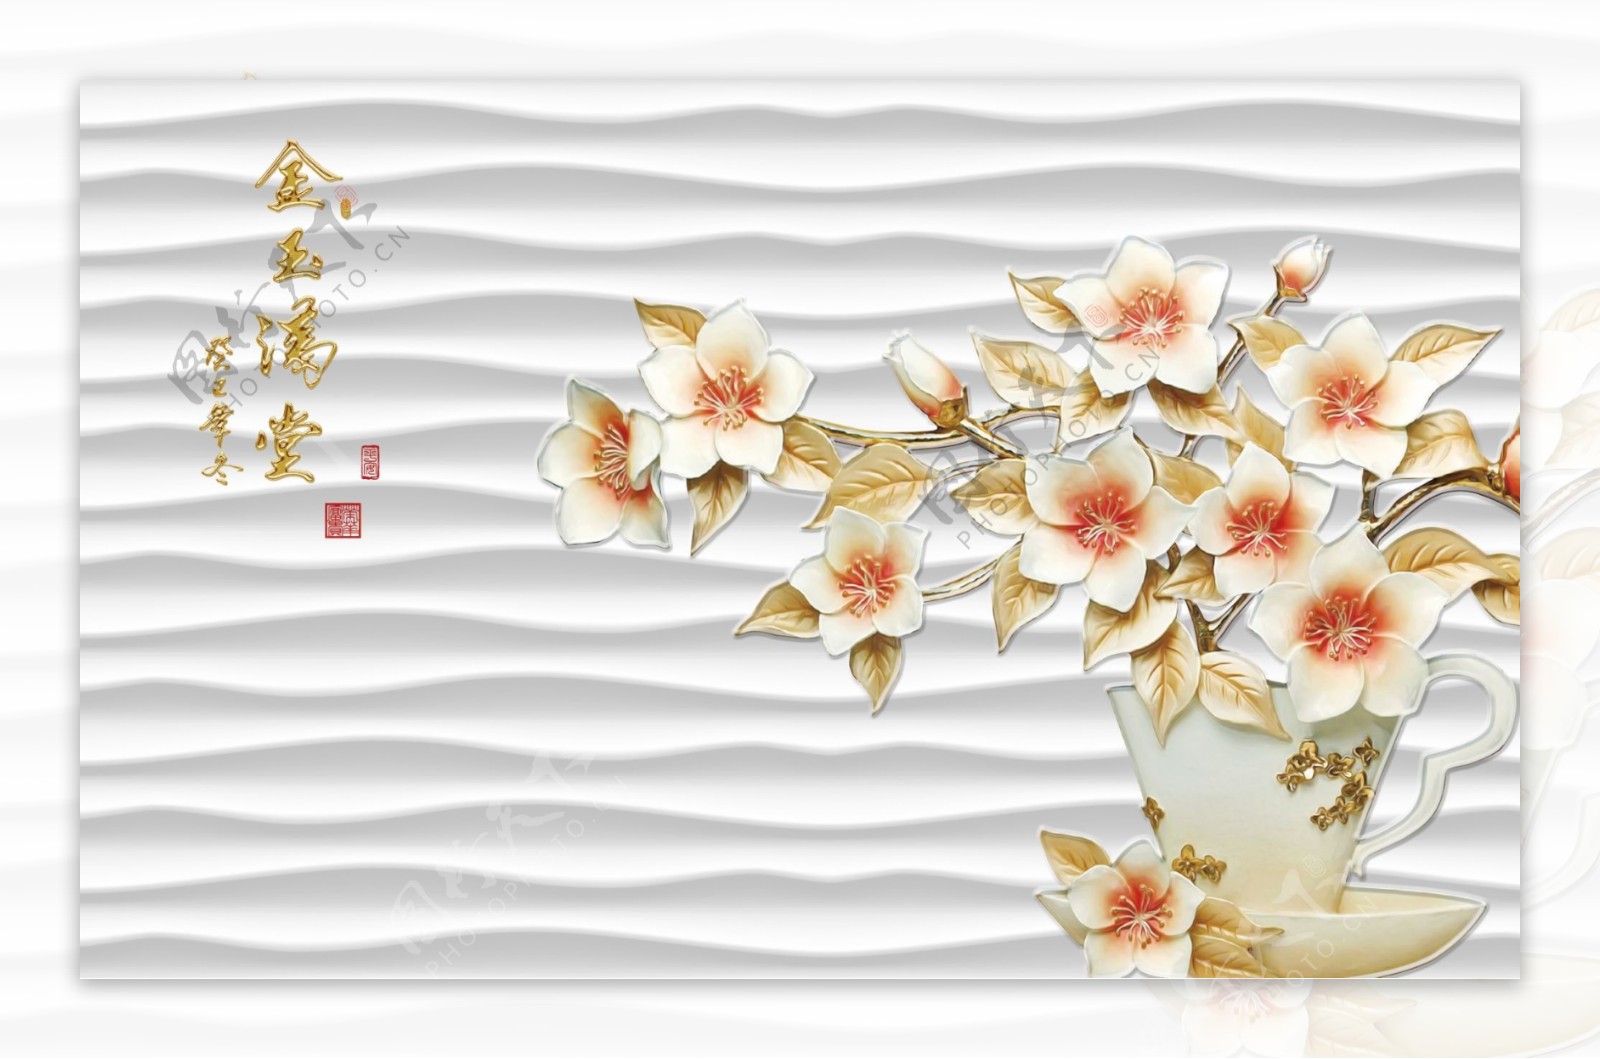 3D浮雕花朵立体背景墙